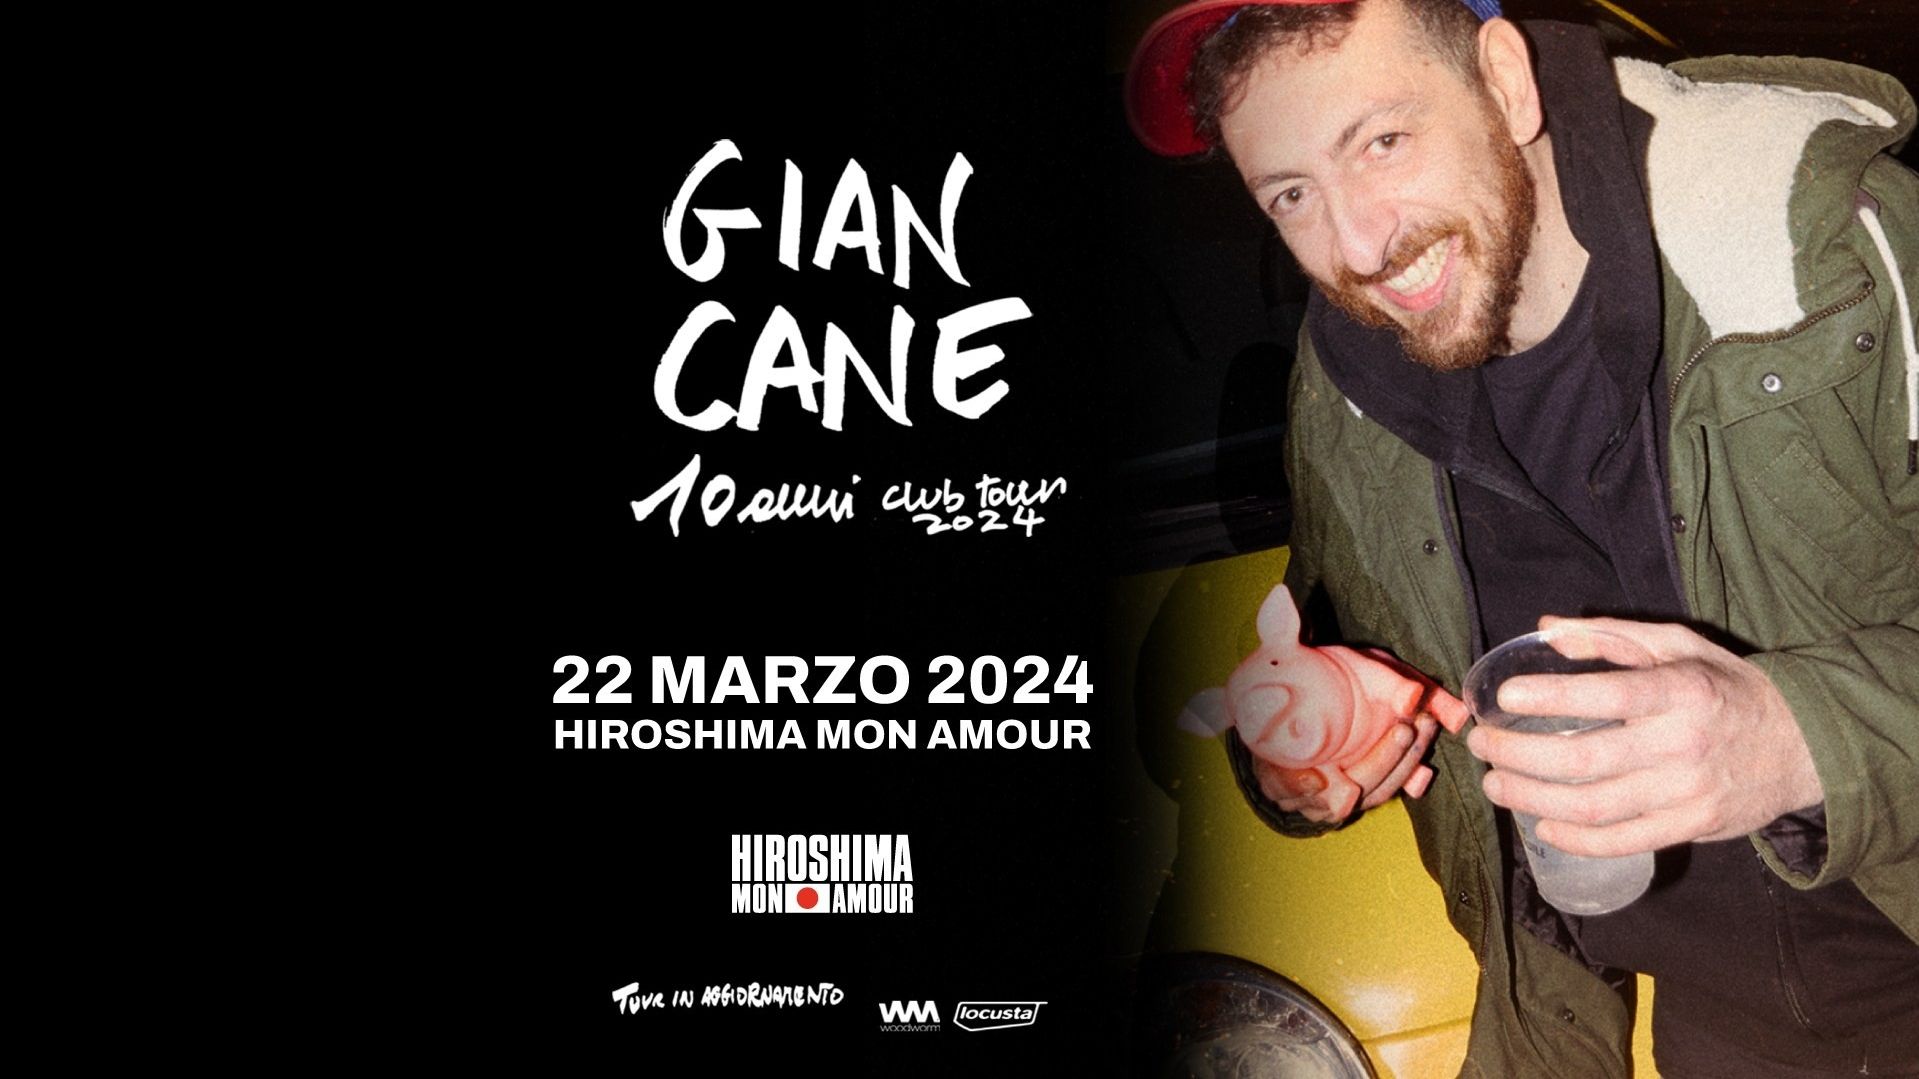 Giancane "10 Anni Club Tour"